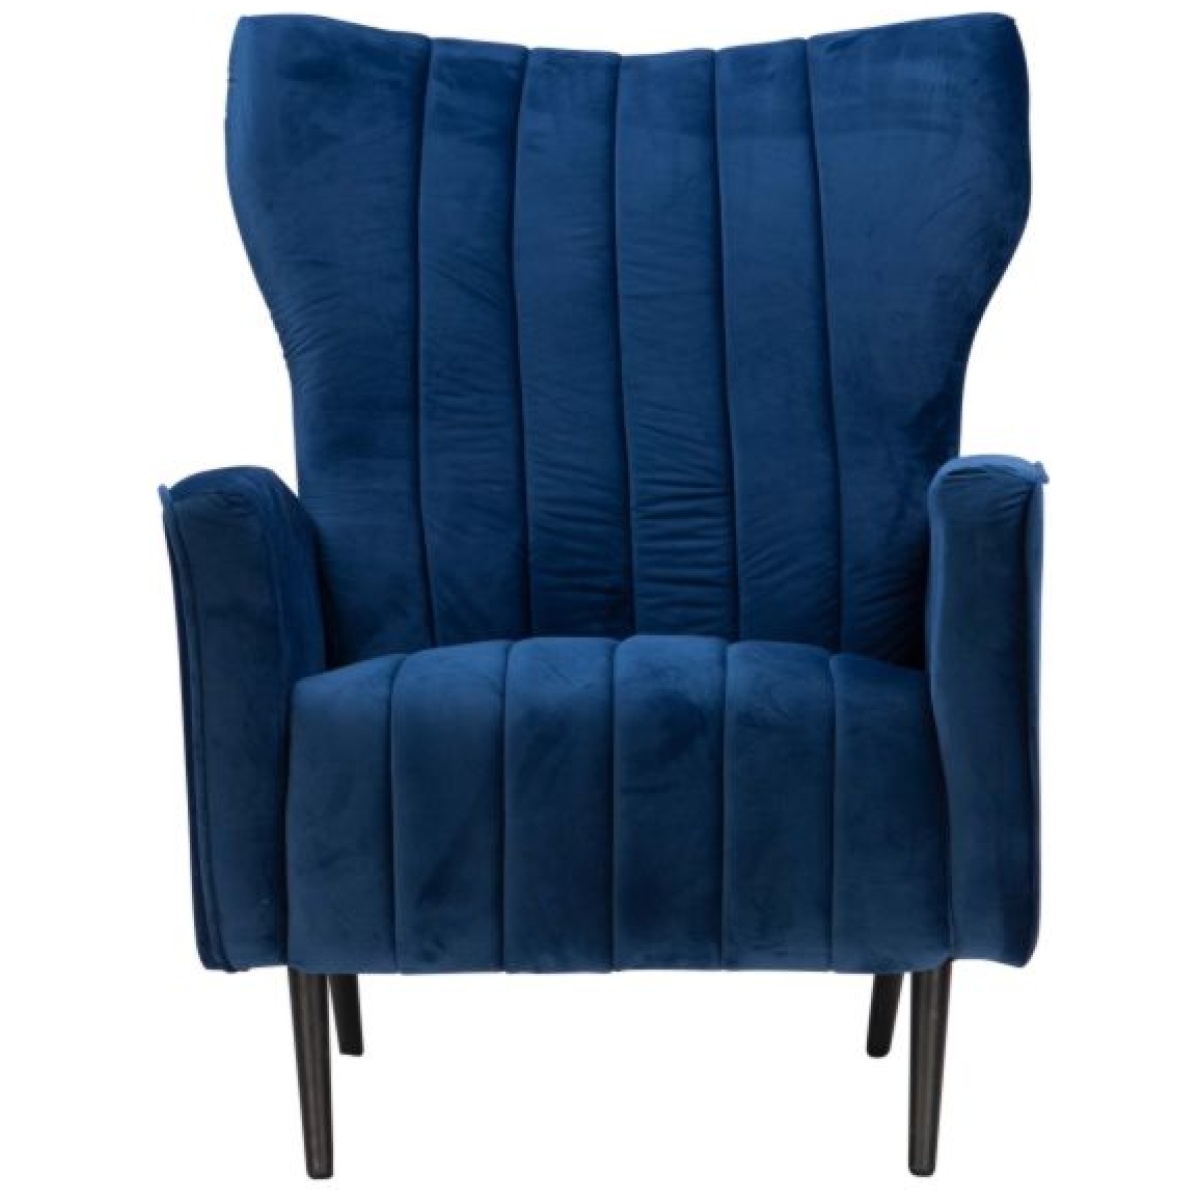 Fabric Leisure Chair (BP776)